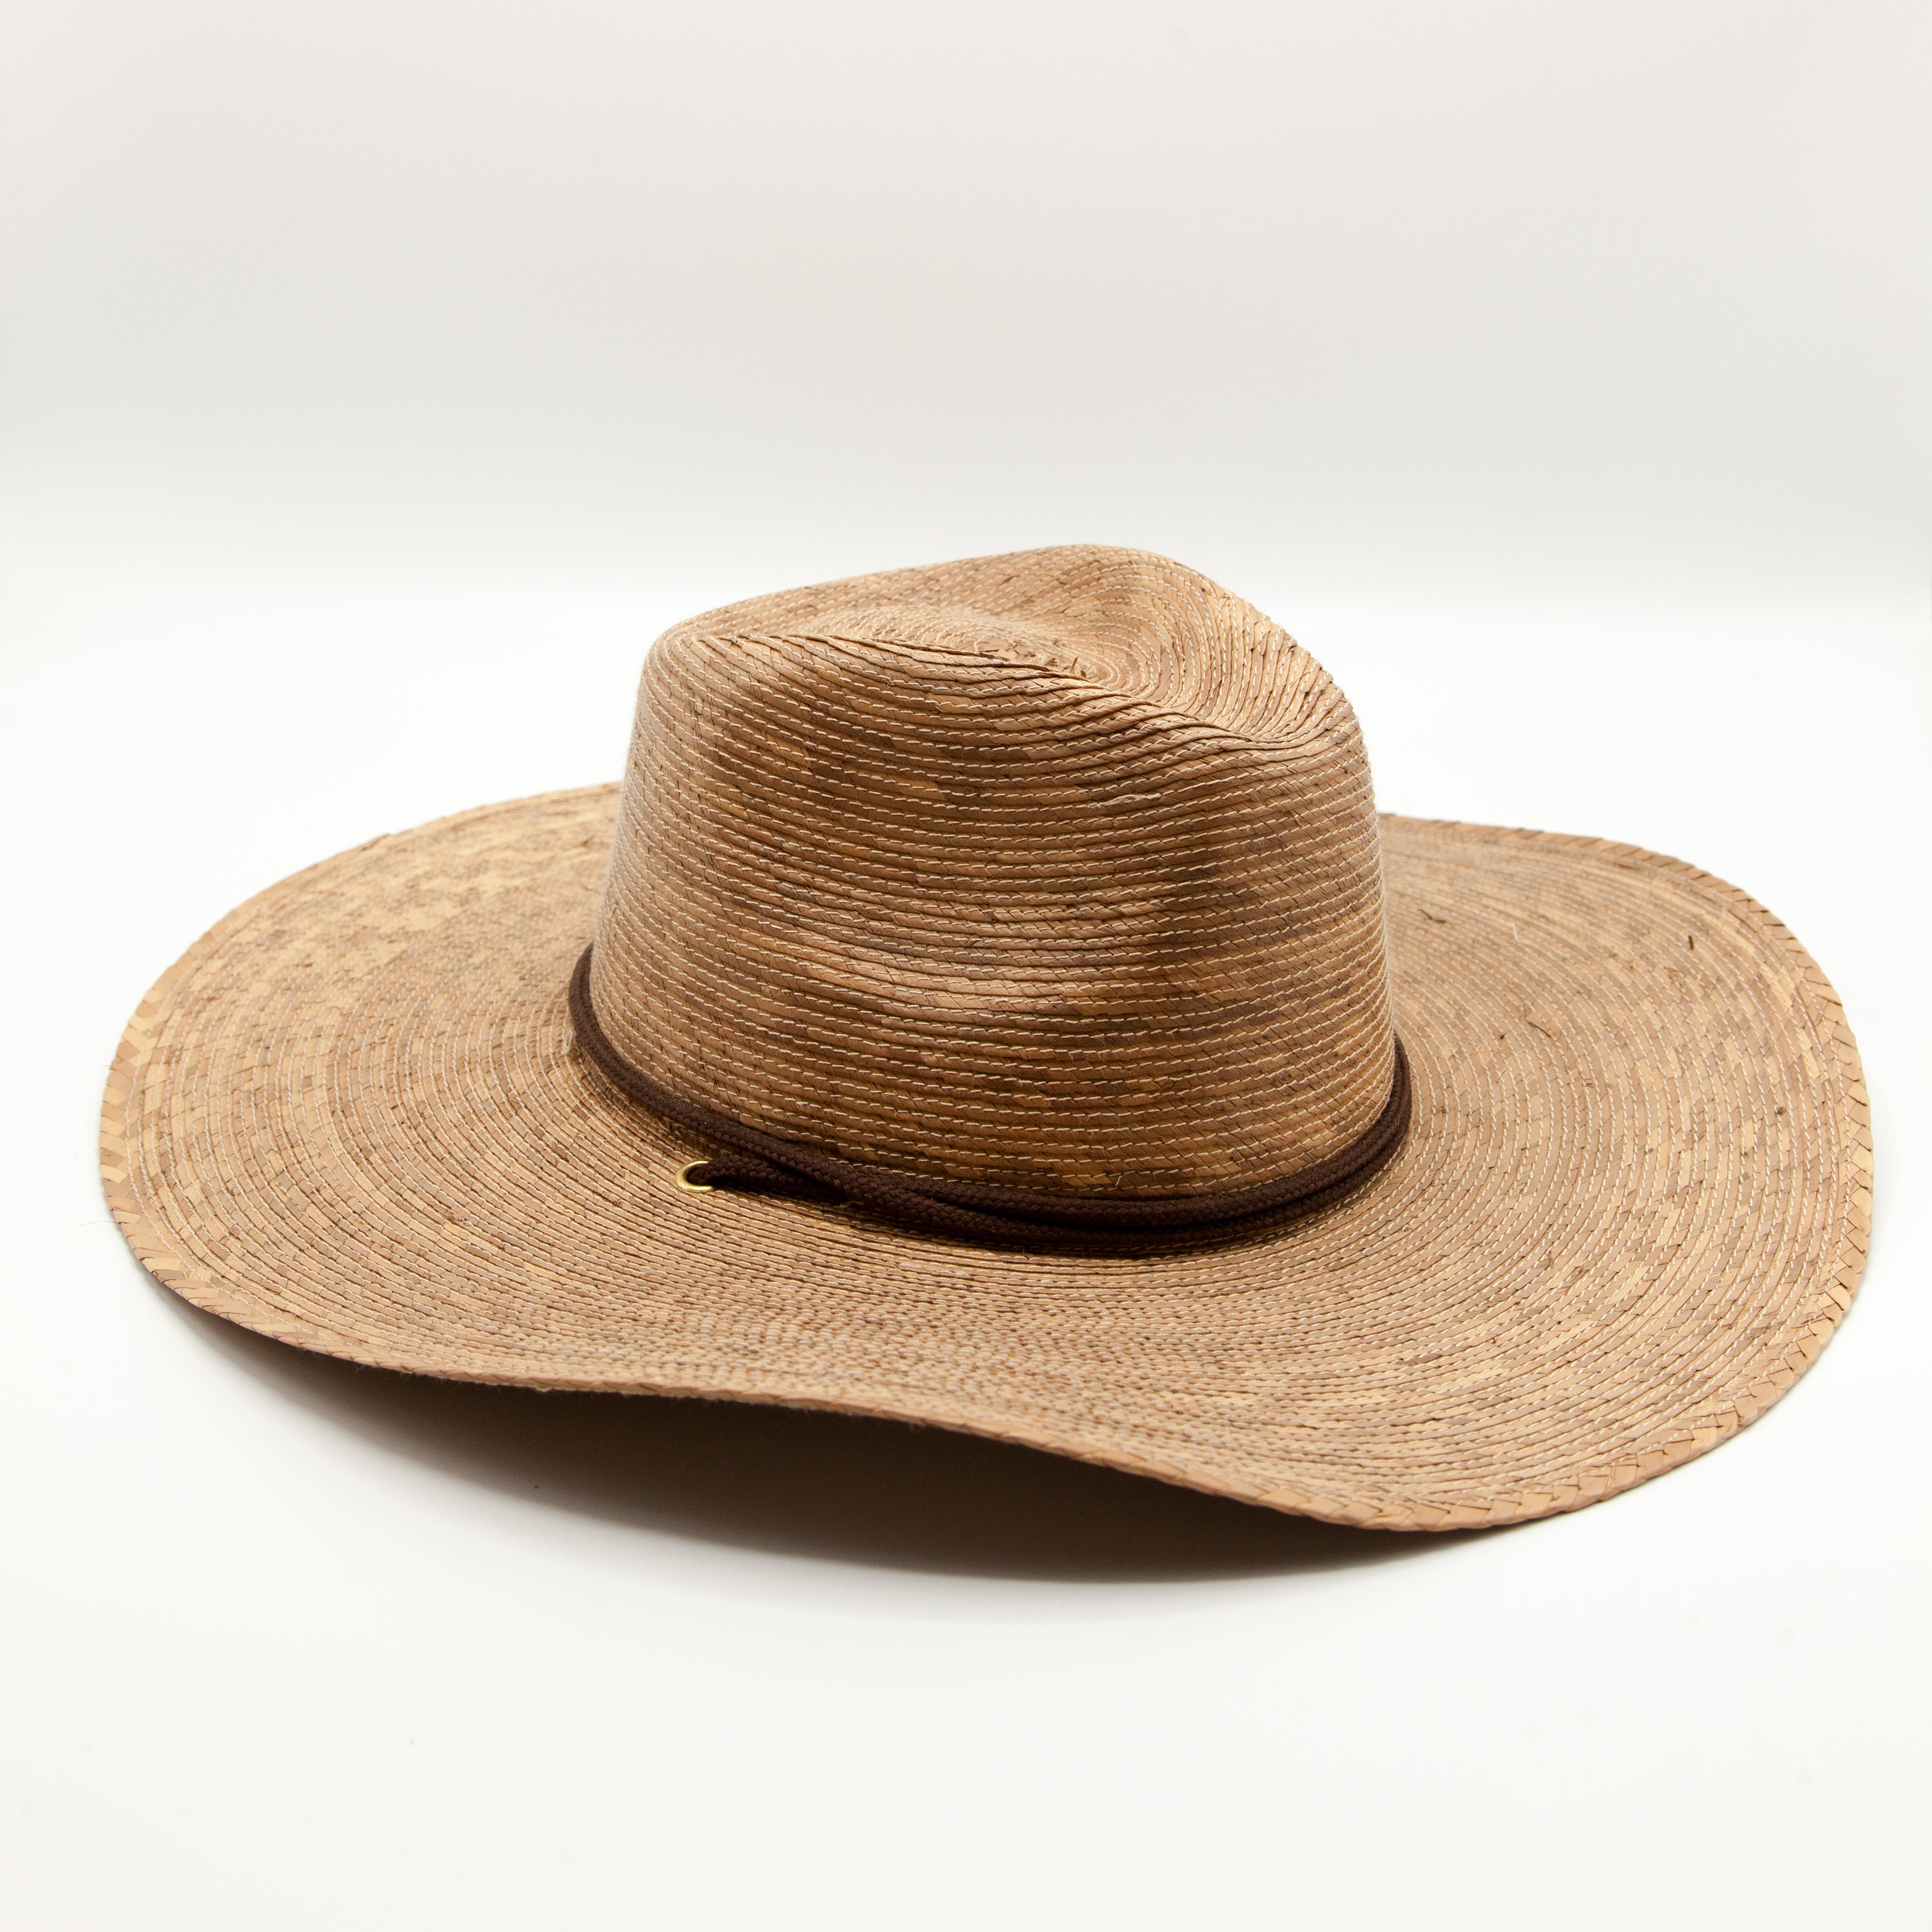 Gardener's Hat - small/medium